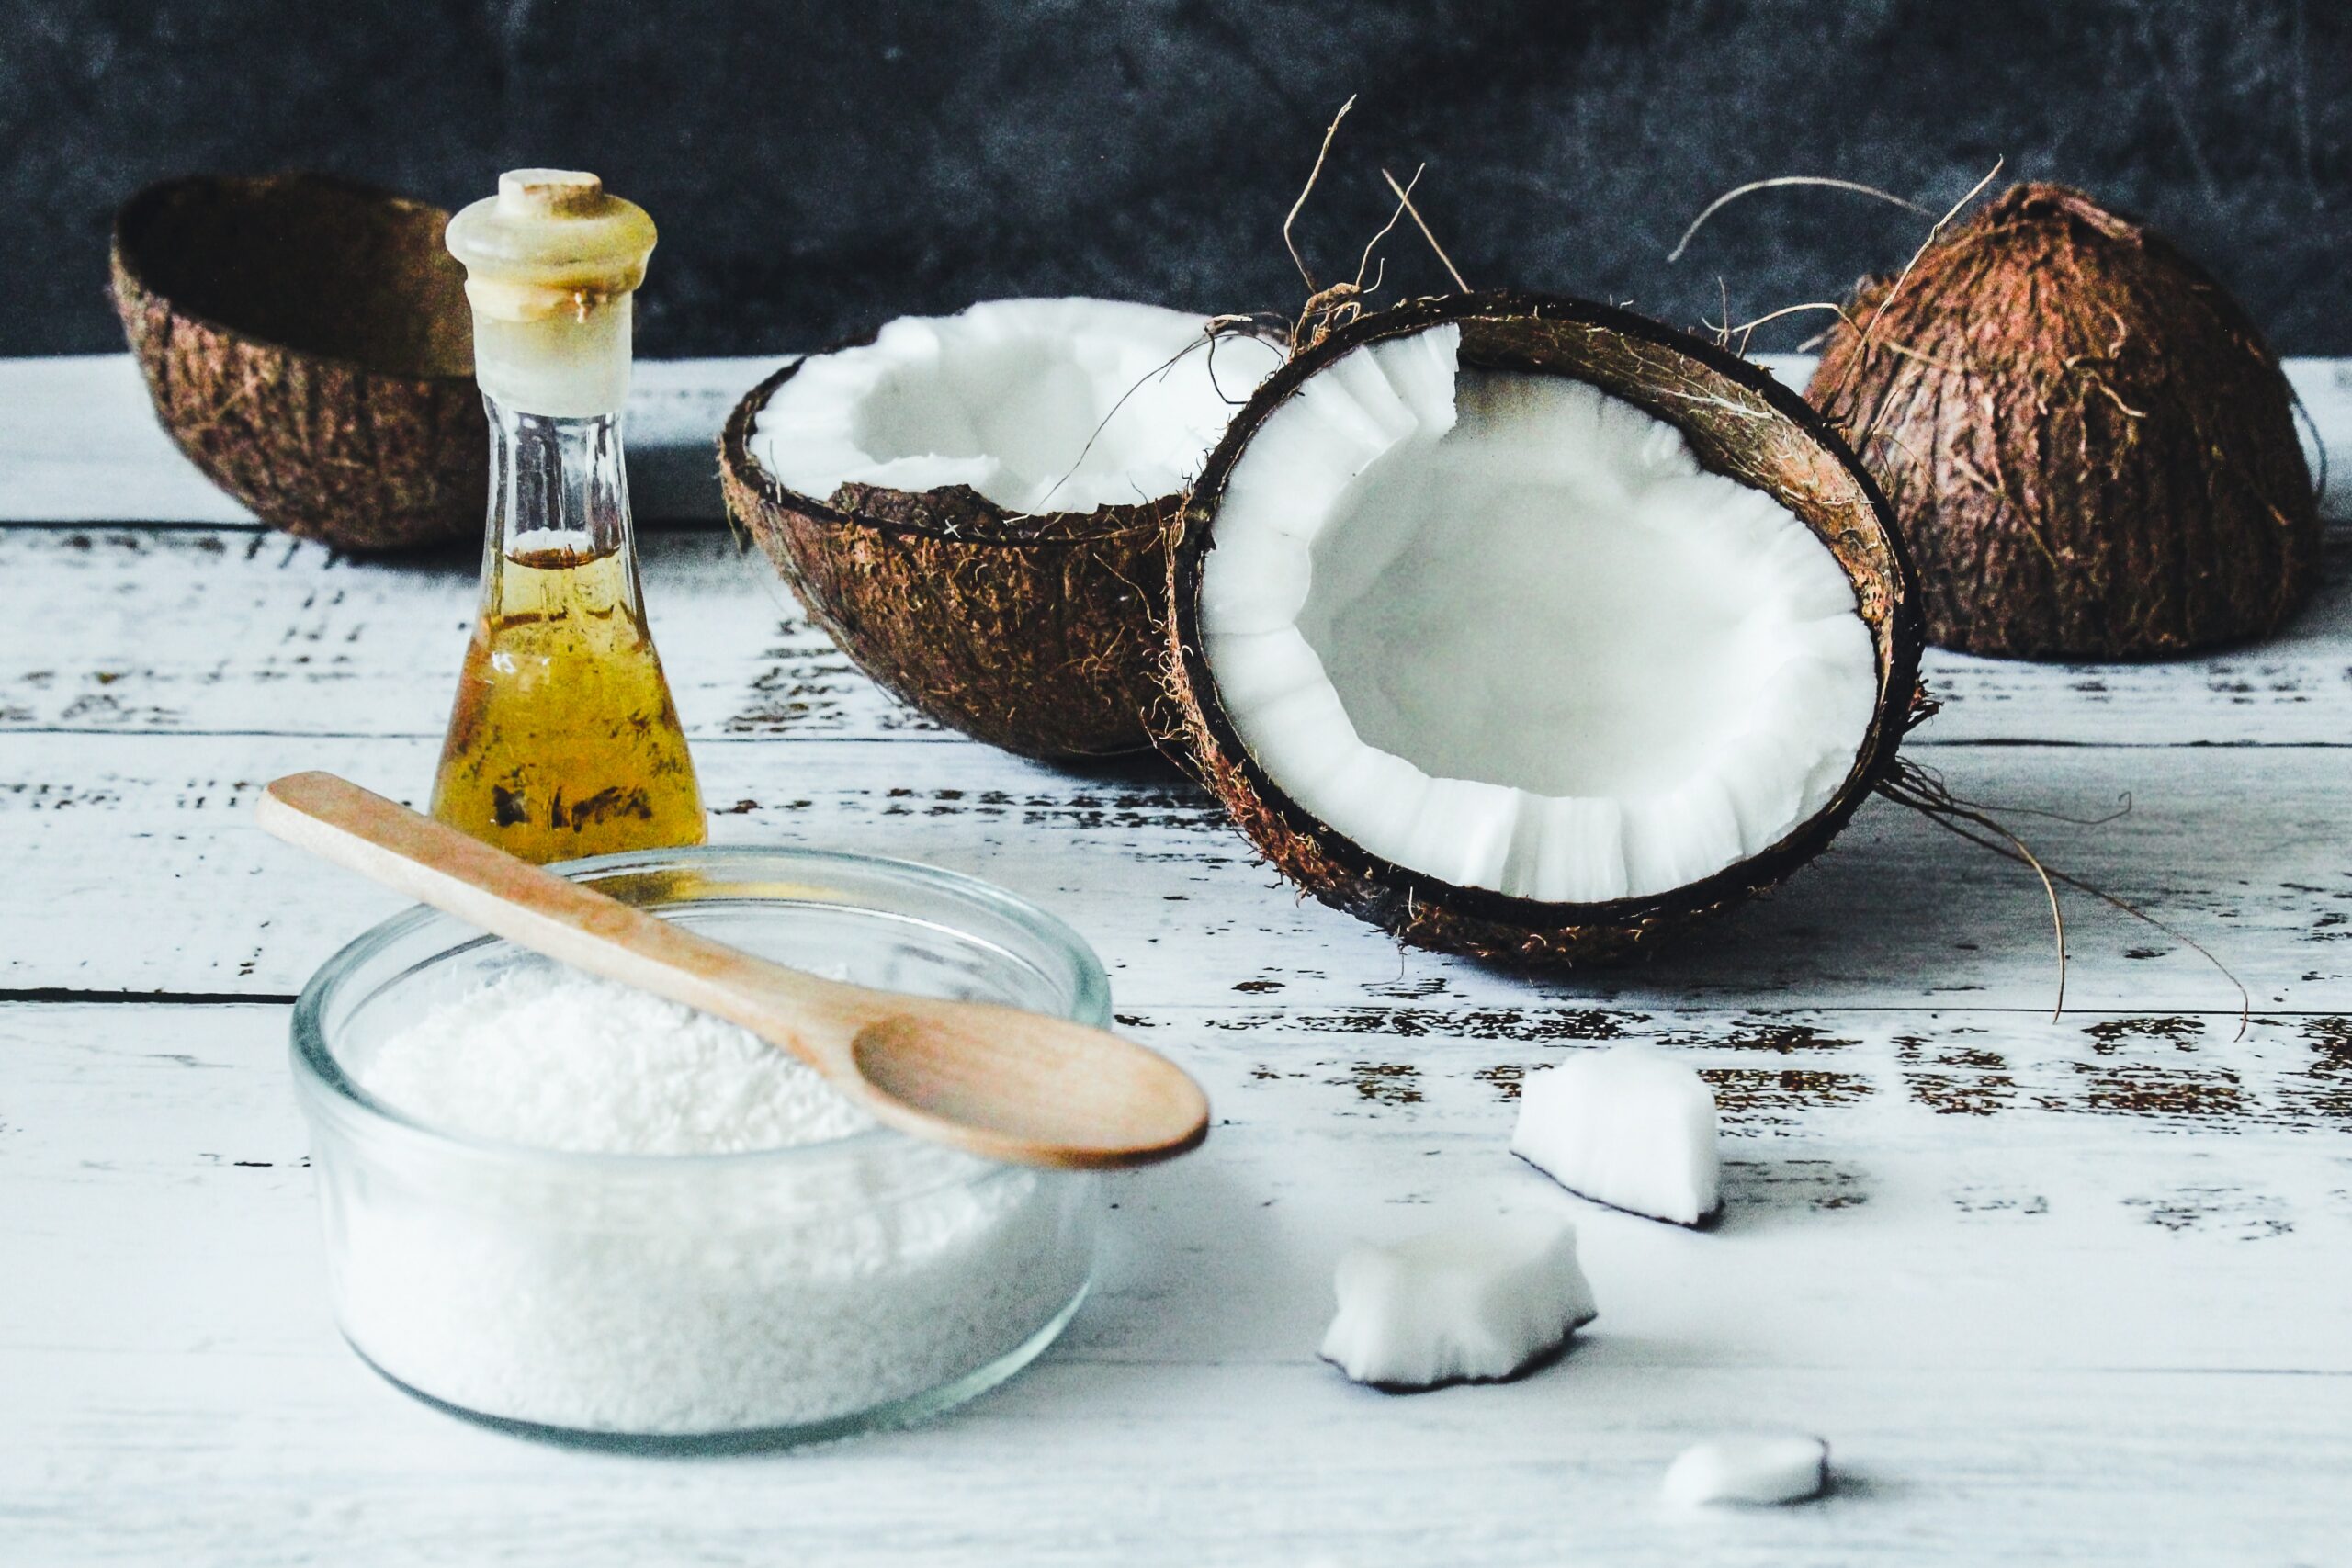 Zahnpasta aus Kokosnussöl — natürliche Alternative zur industriellen Zahnpasta